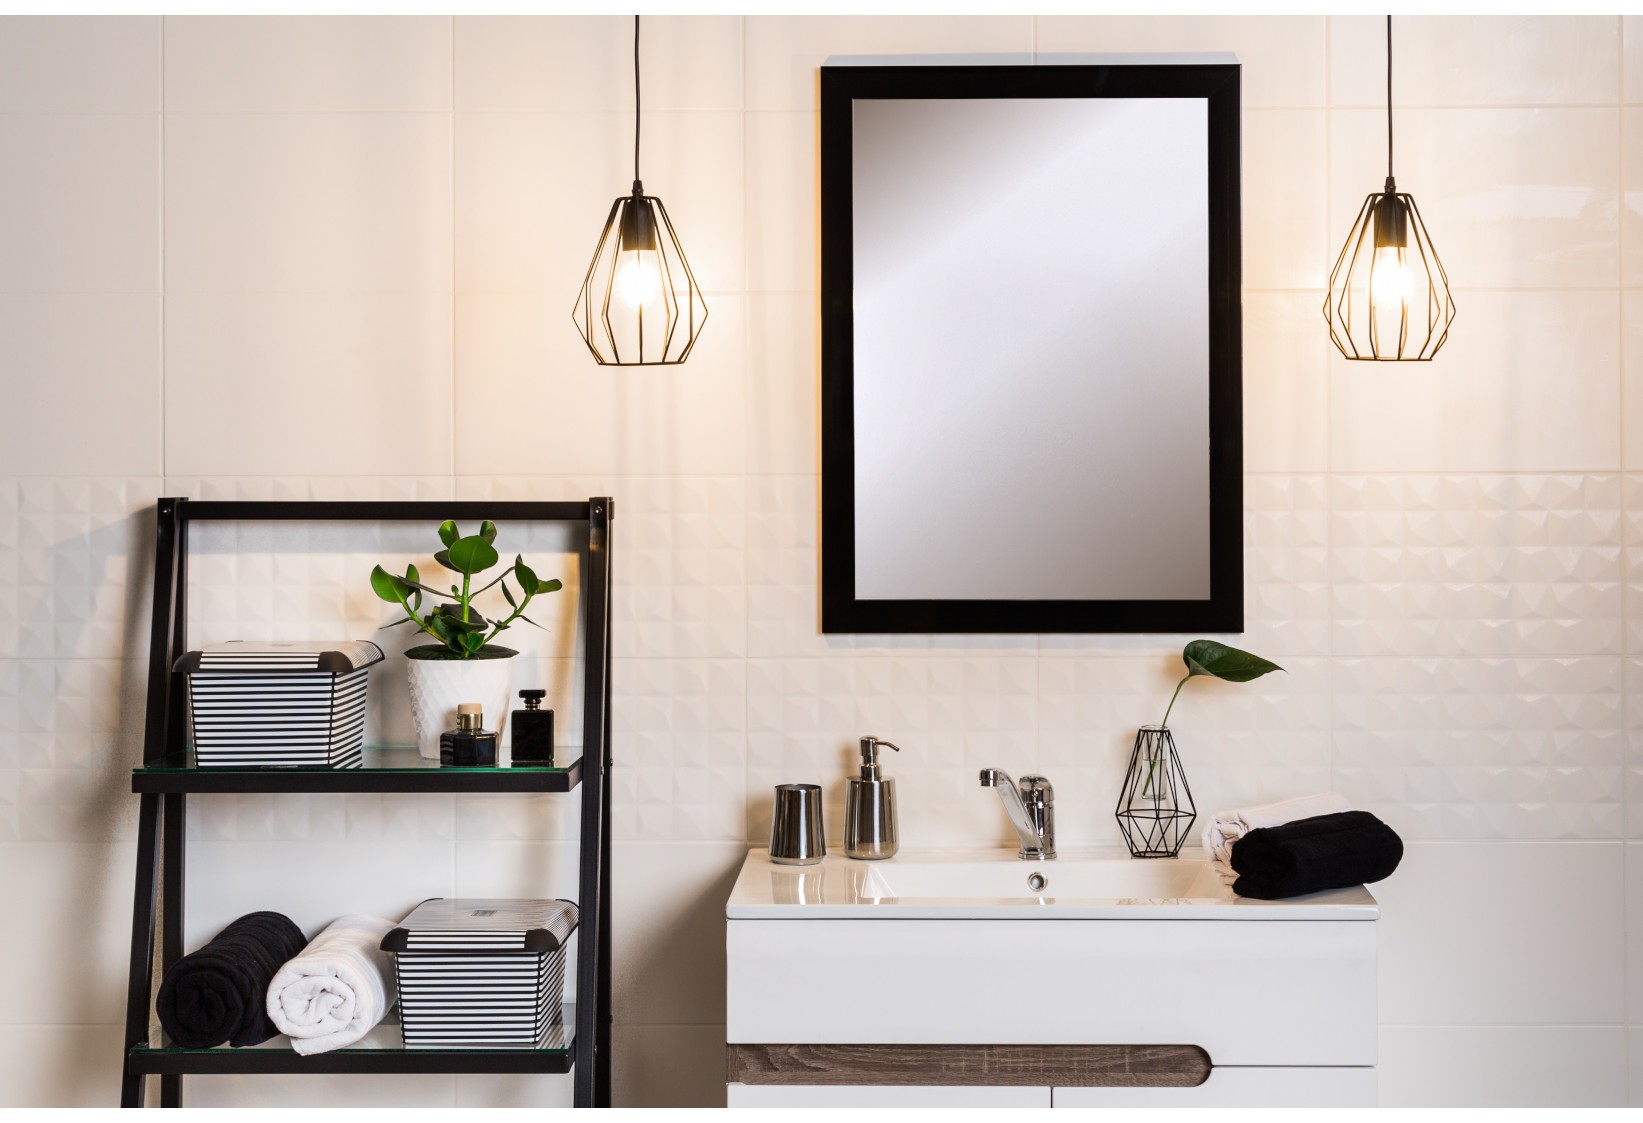 aranżacja łazienki w nowoczesnym stylu z metalową półką i lustrem w czarnej ramie